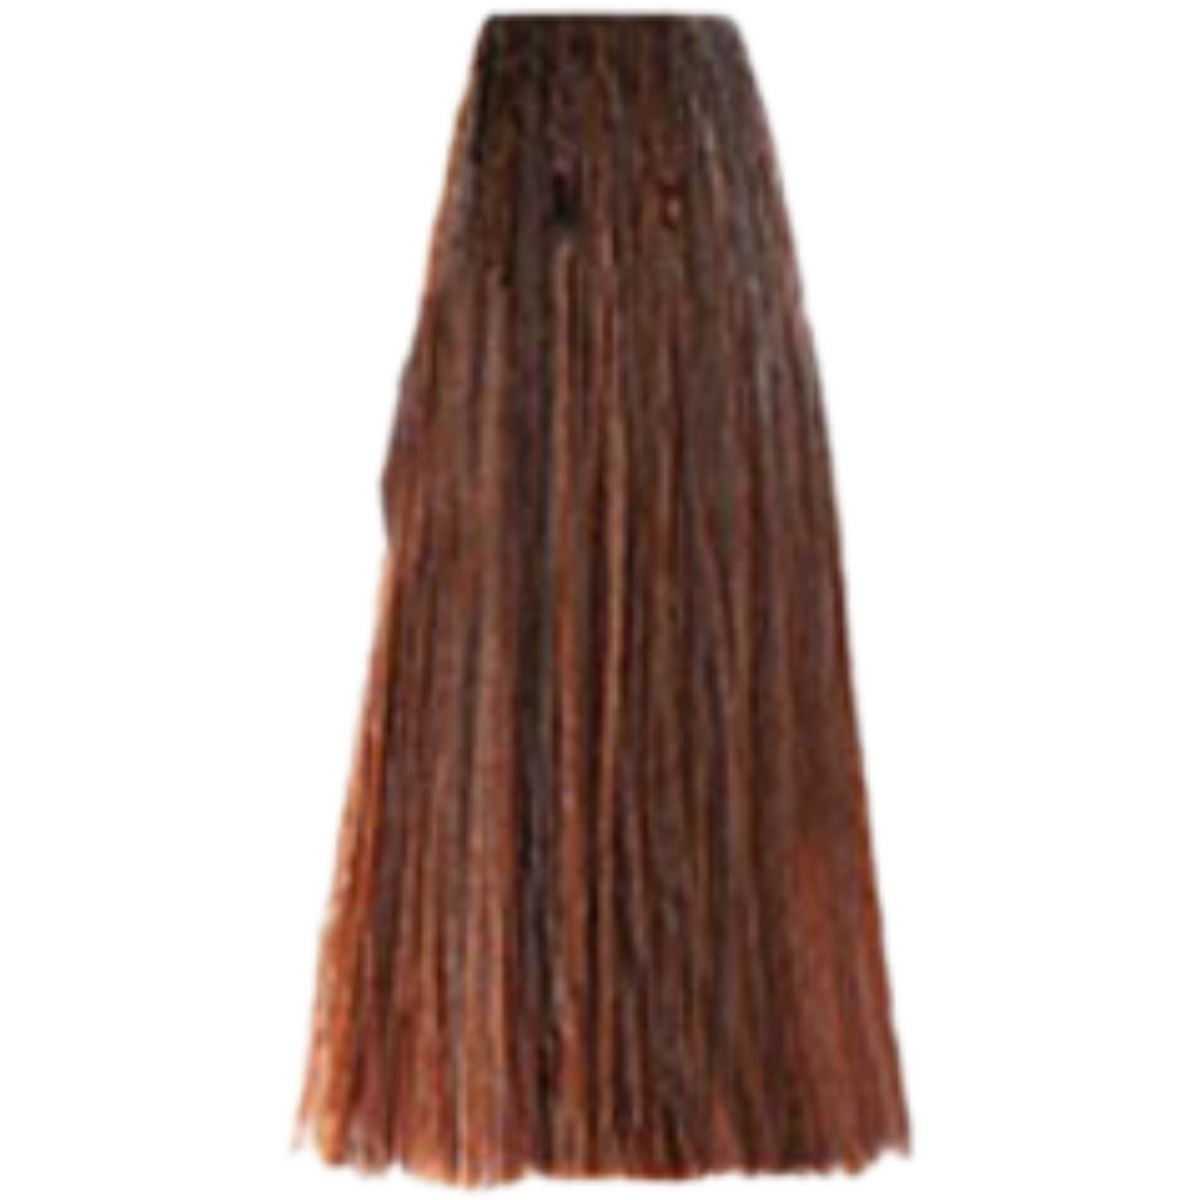 צבע שיער 6.4 DARK COPPER BLONDE פארמויטה FarmaVita צבע לשיער 100 גרם